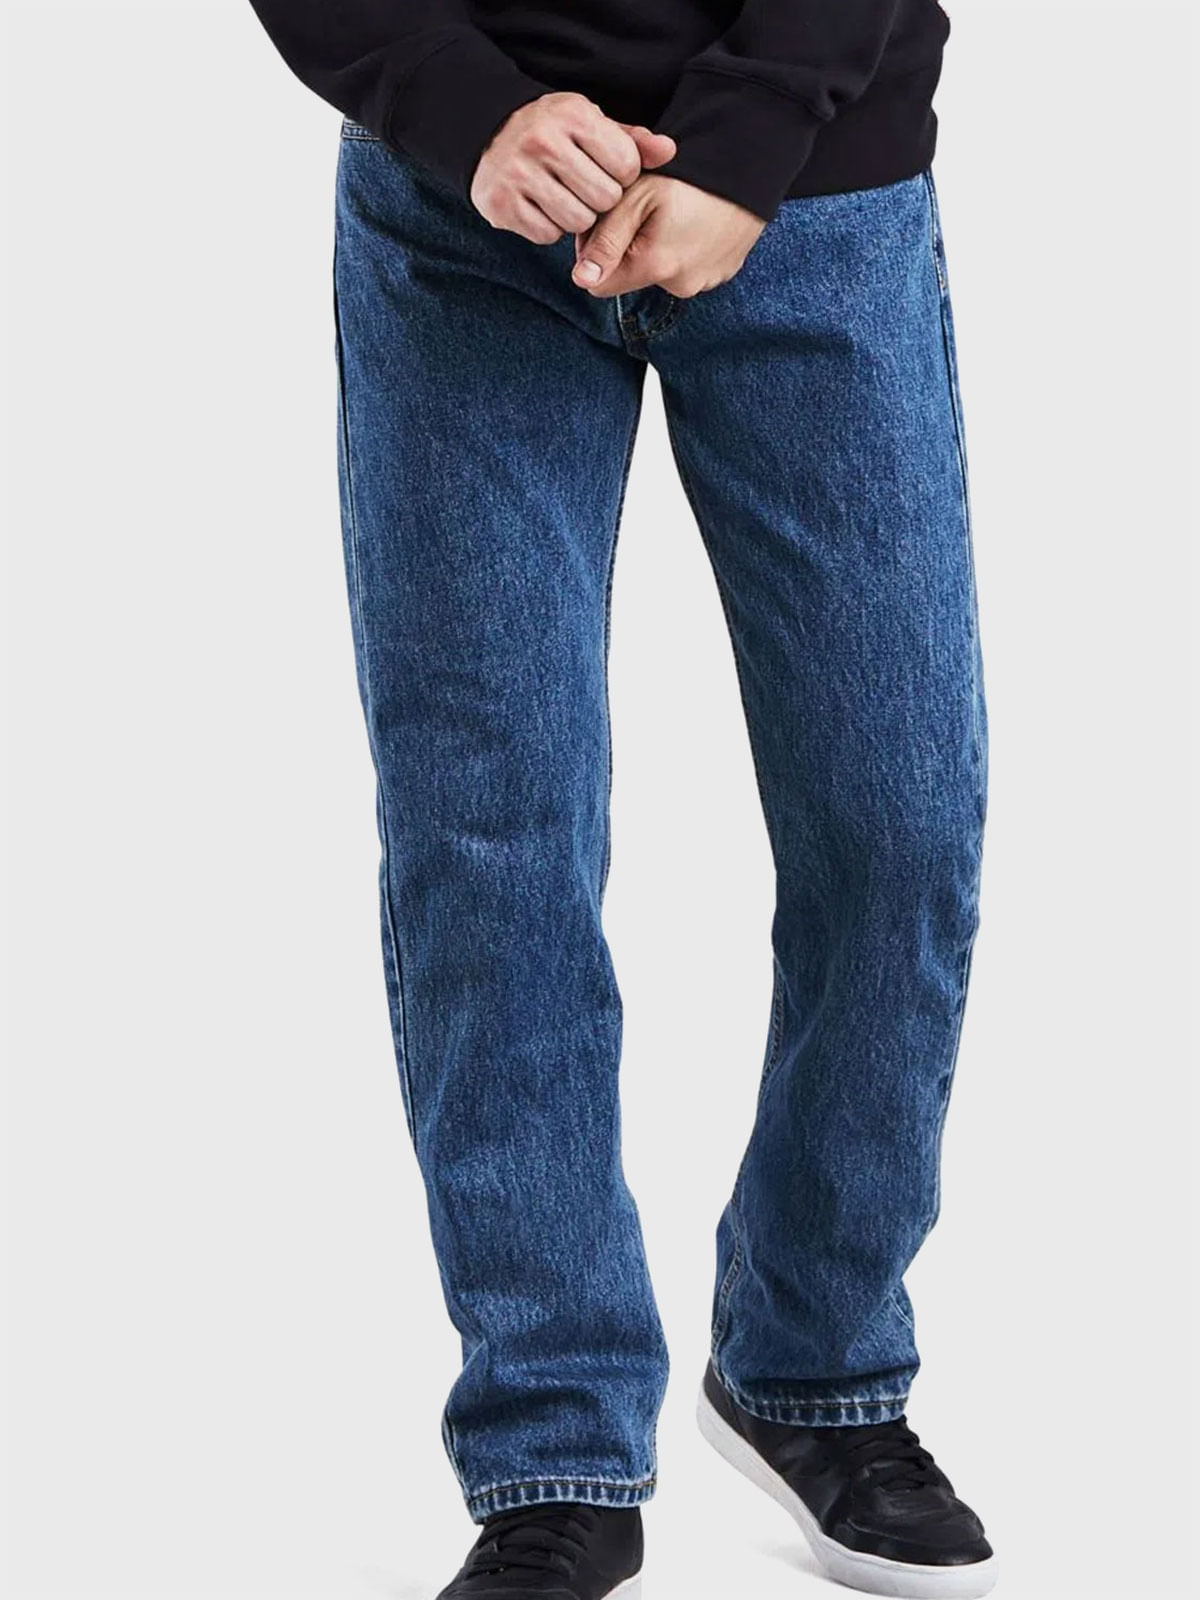 Jeans y Pantalones,00505-4891 - Tienda Oficial de Levi's Online en Panama